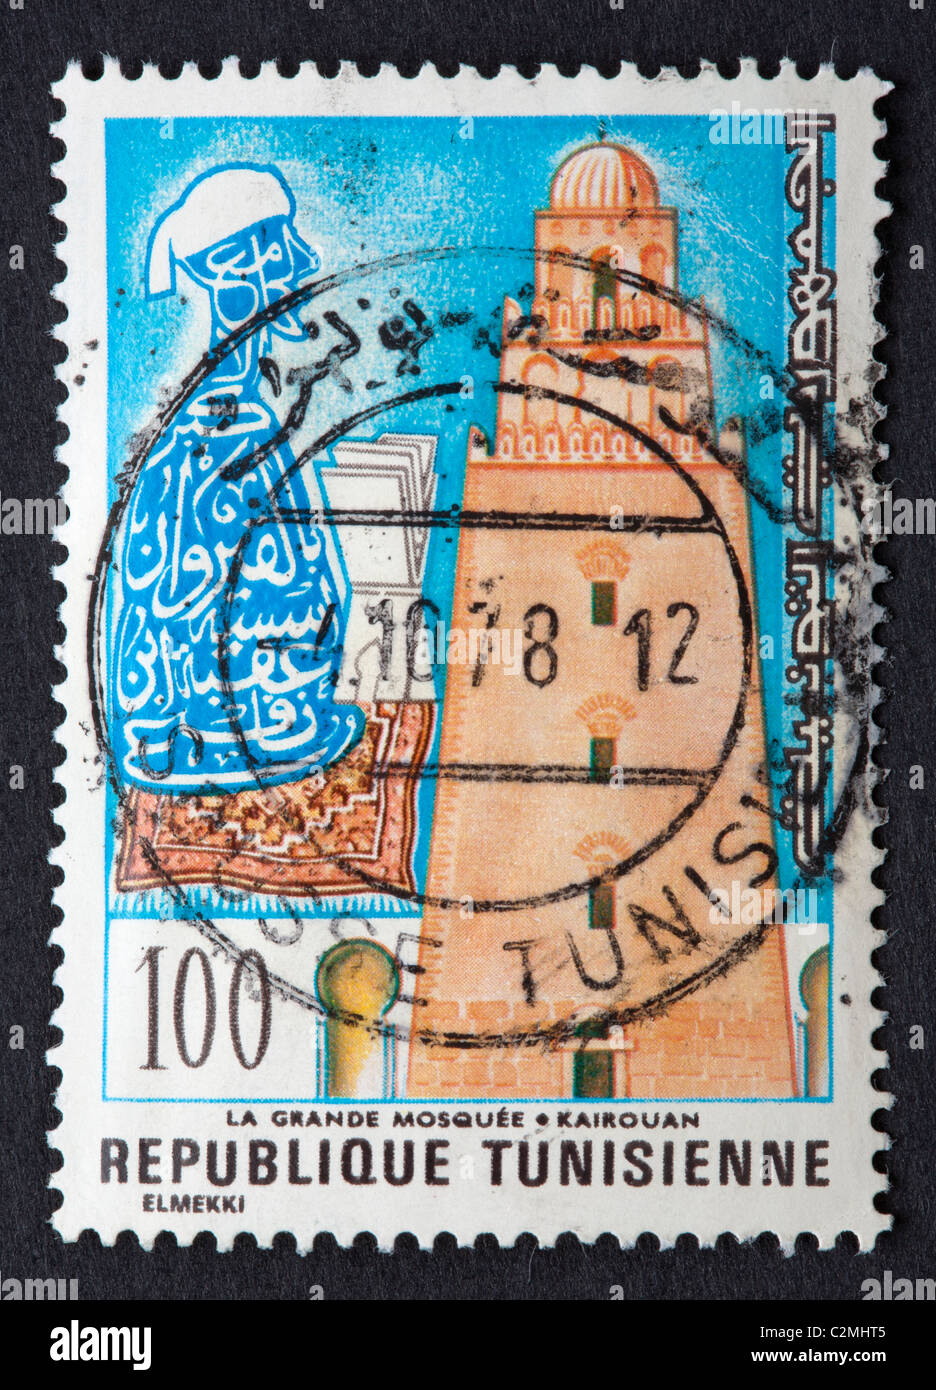 Timbre tunisien Banque D'Images